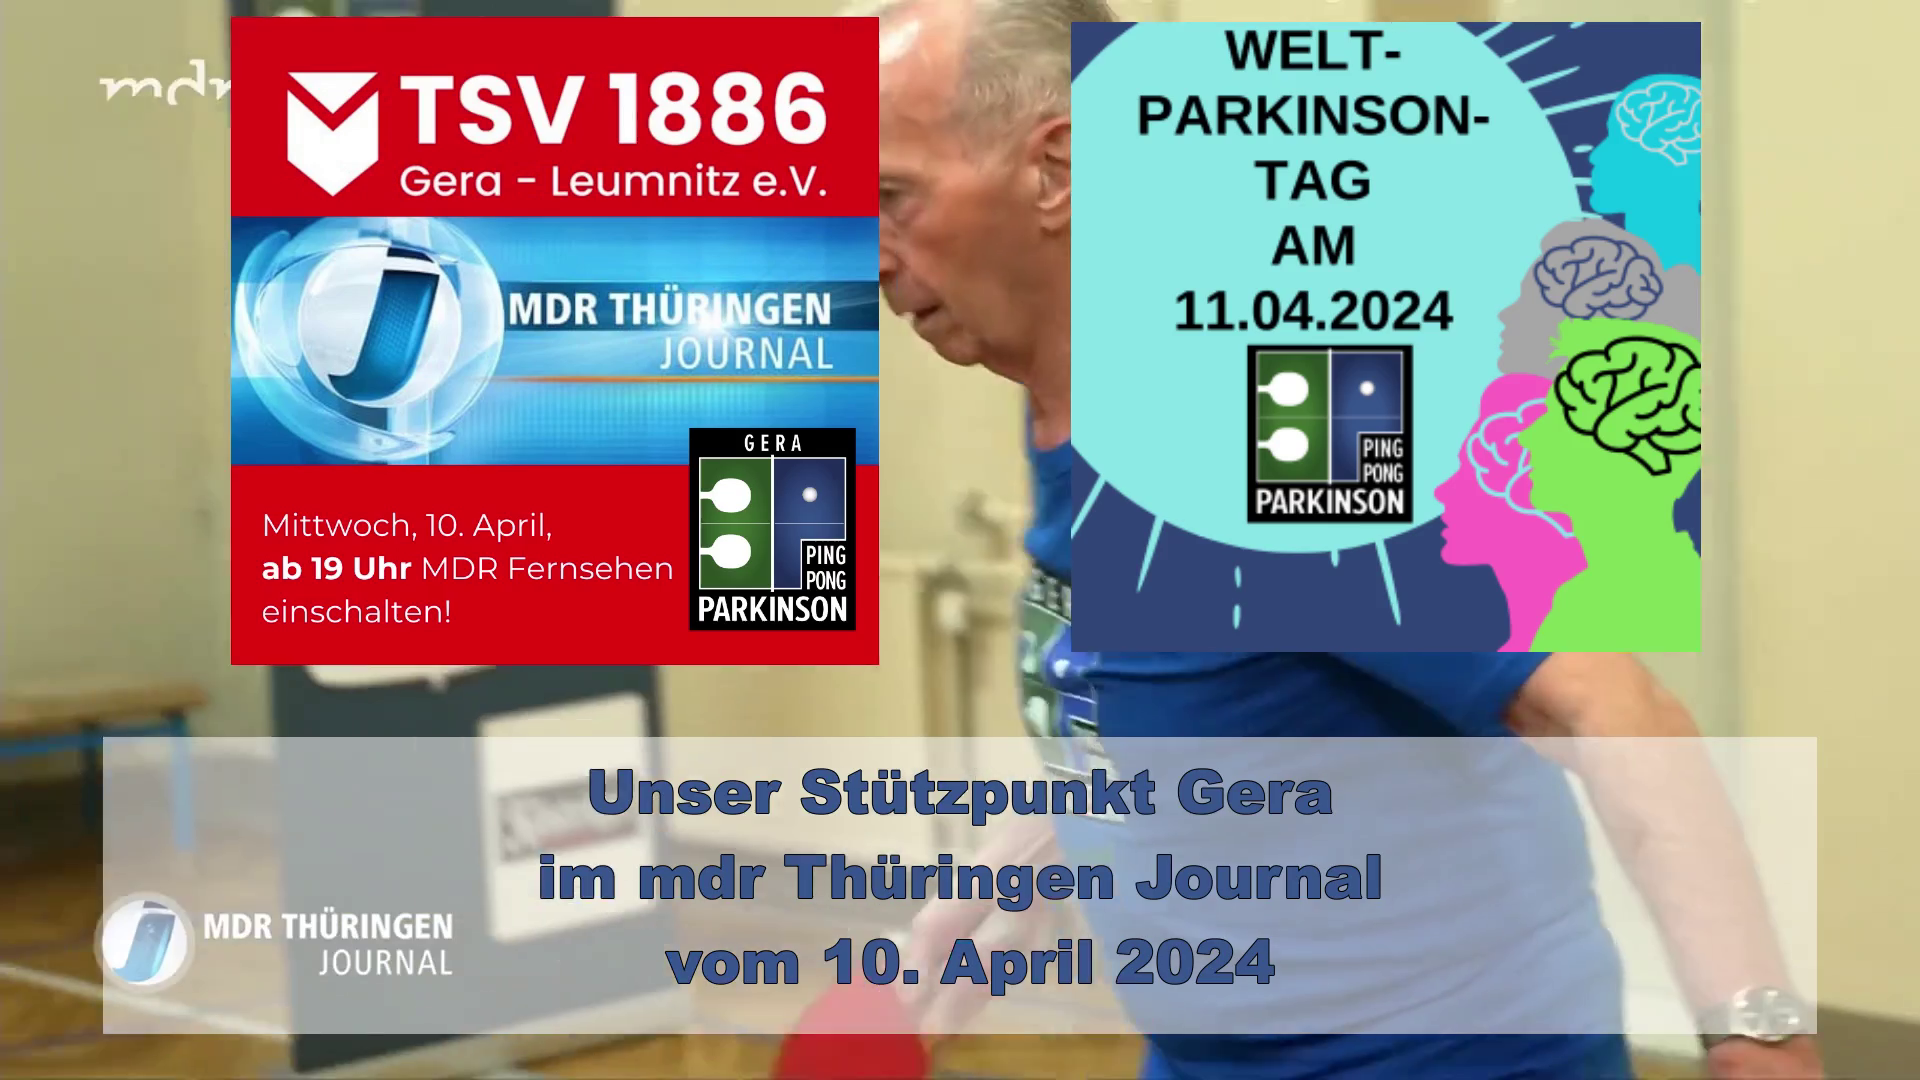 Unser Stützpunkt Gera im mdr Thüringen Journal vom 10. April 2024